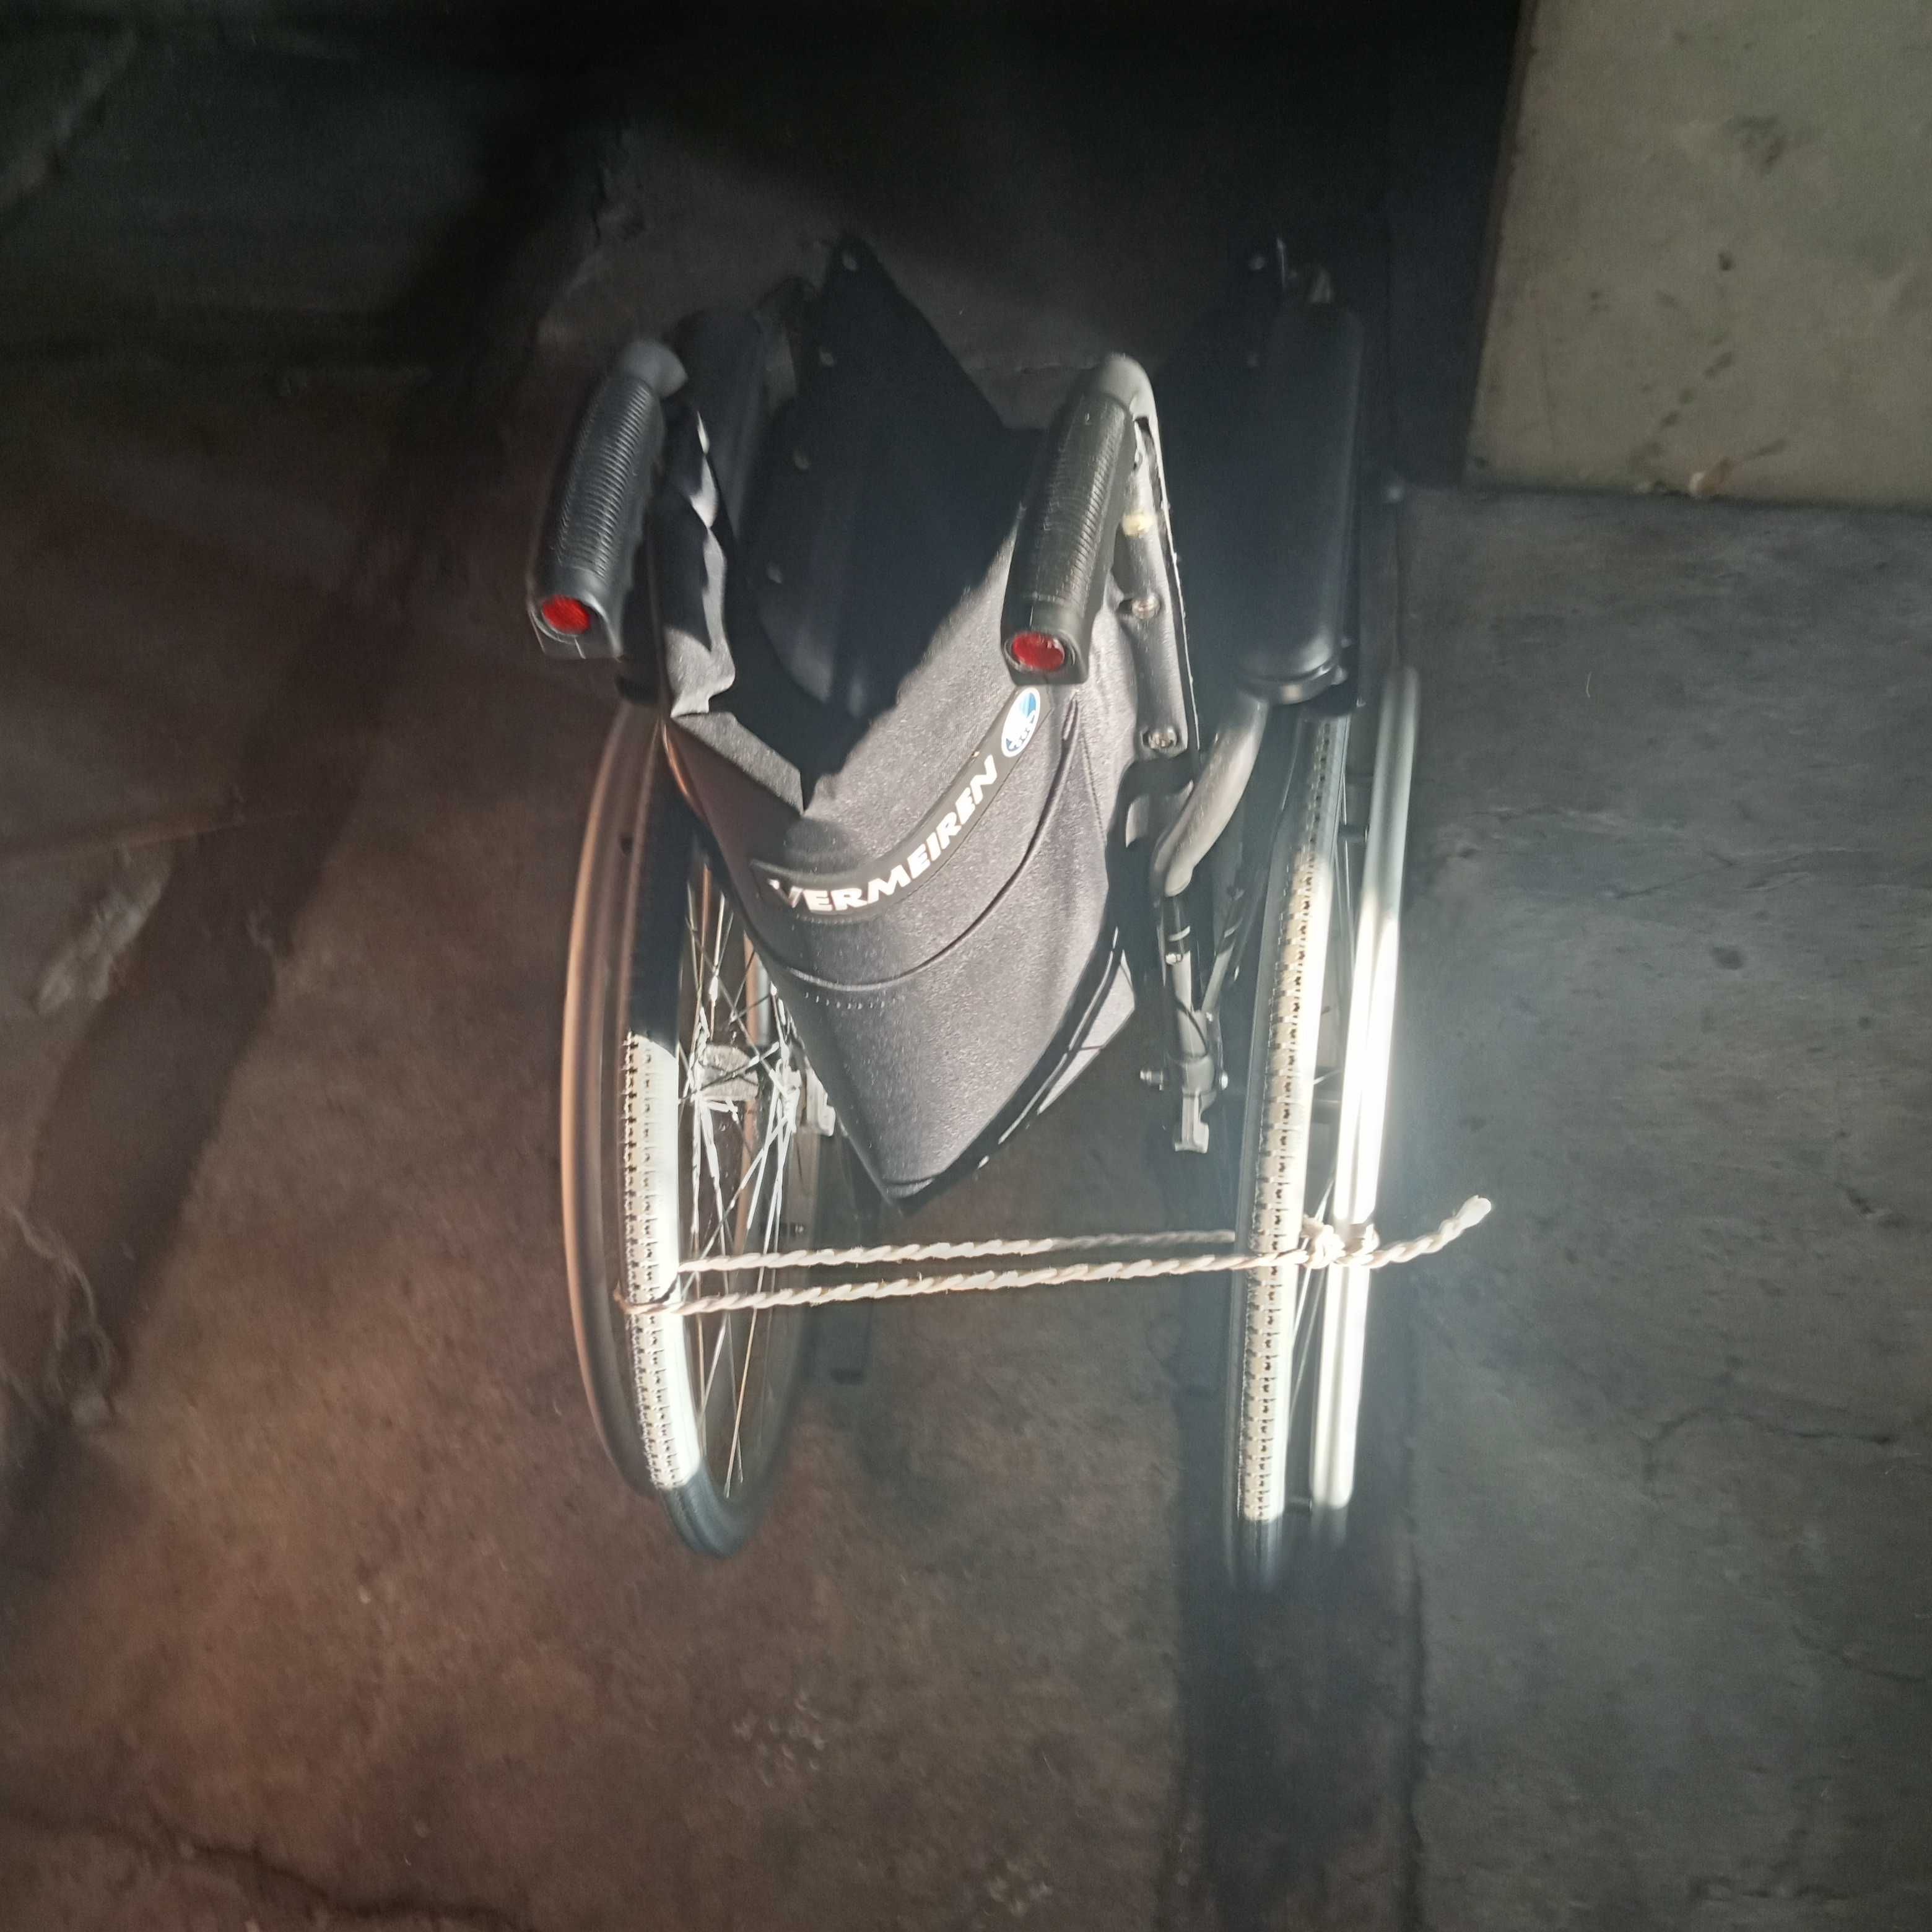 Sprzedam wózek inwalidzki